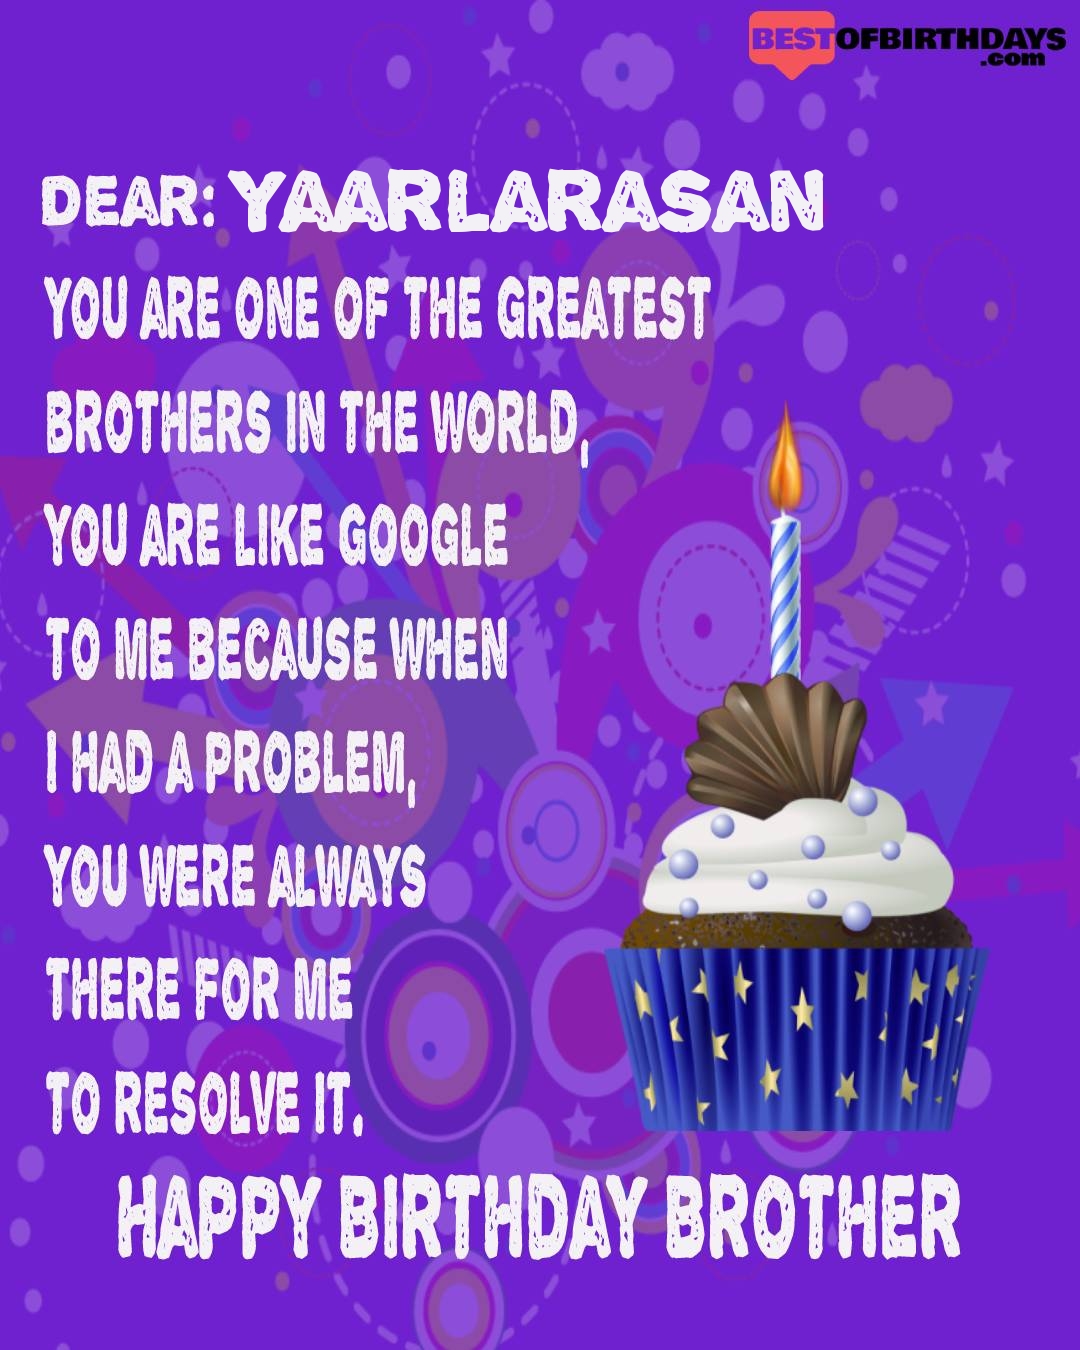 Happy birthday yaarlarasan bhai brother bro